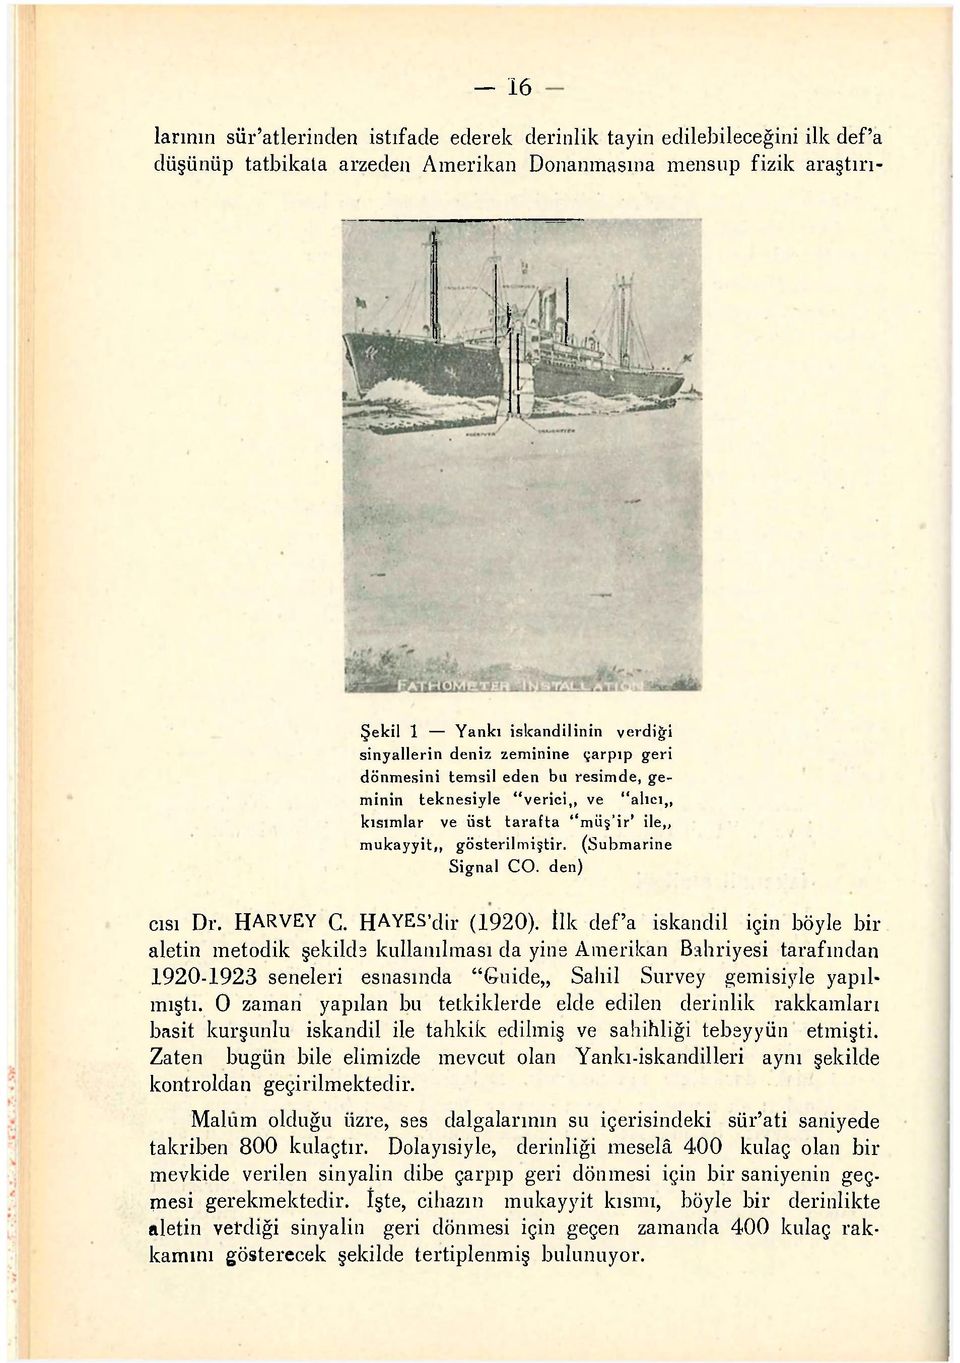 (Submarine Signal CO. den) cısı Dr. HARVEY C. HAYES'dir (1920).